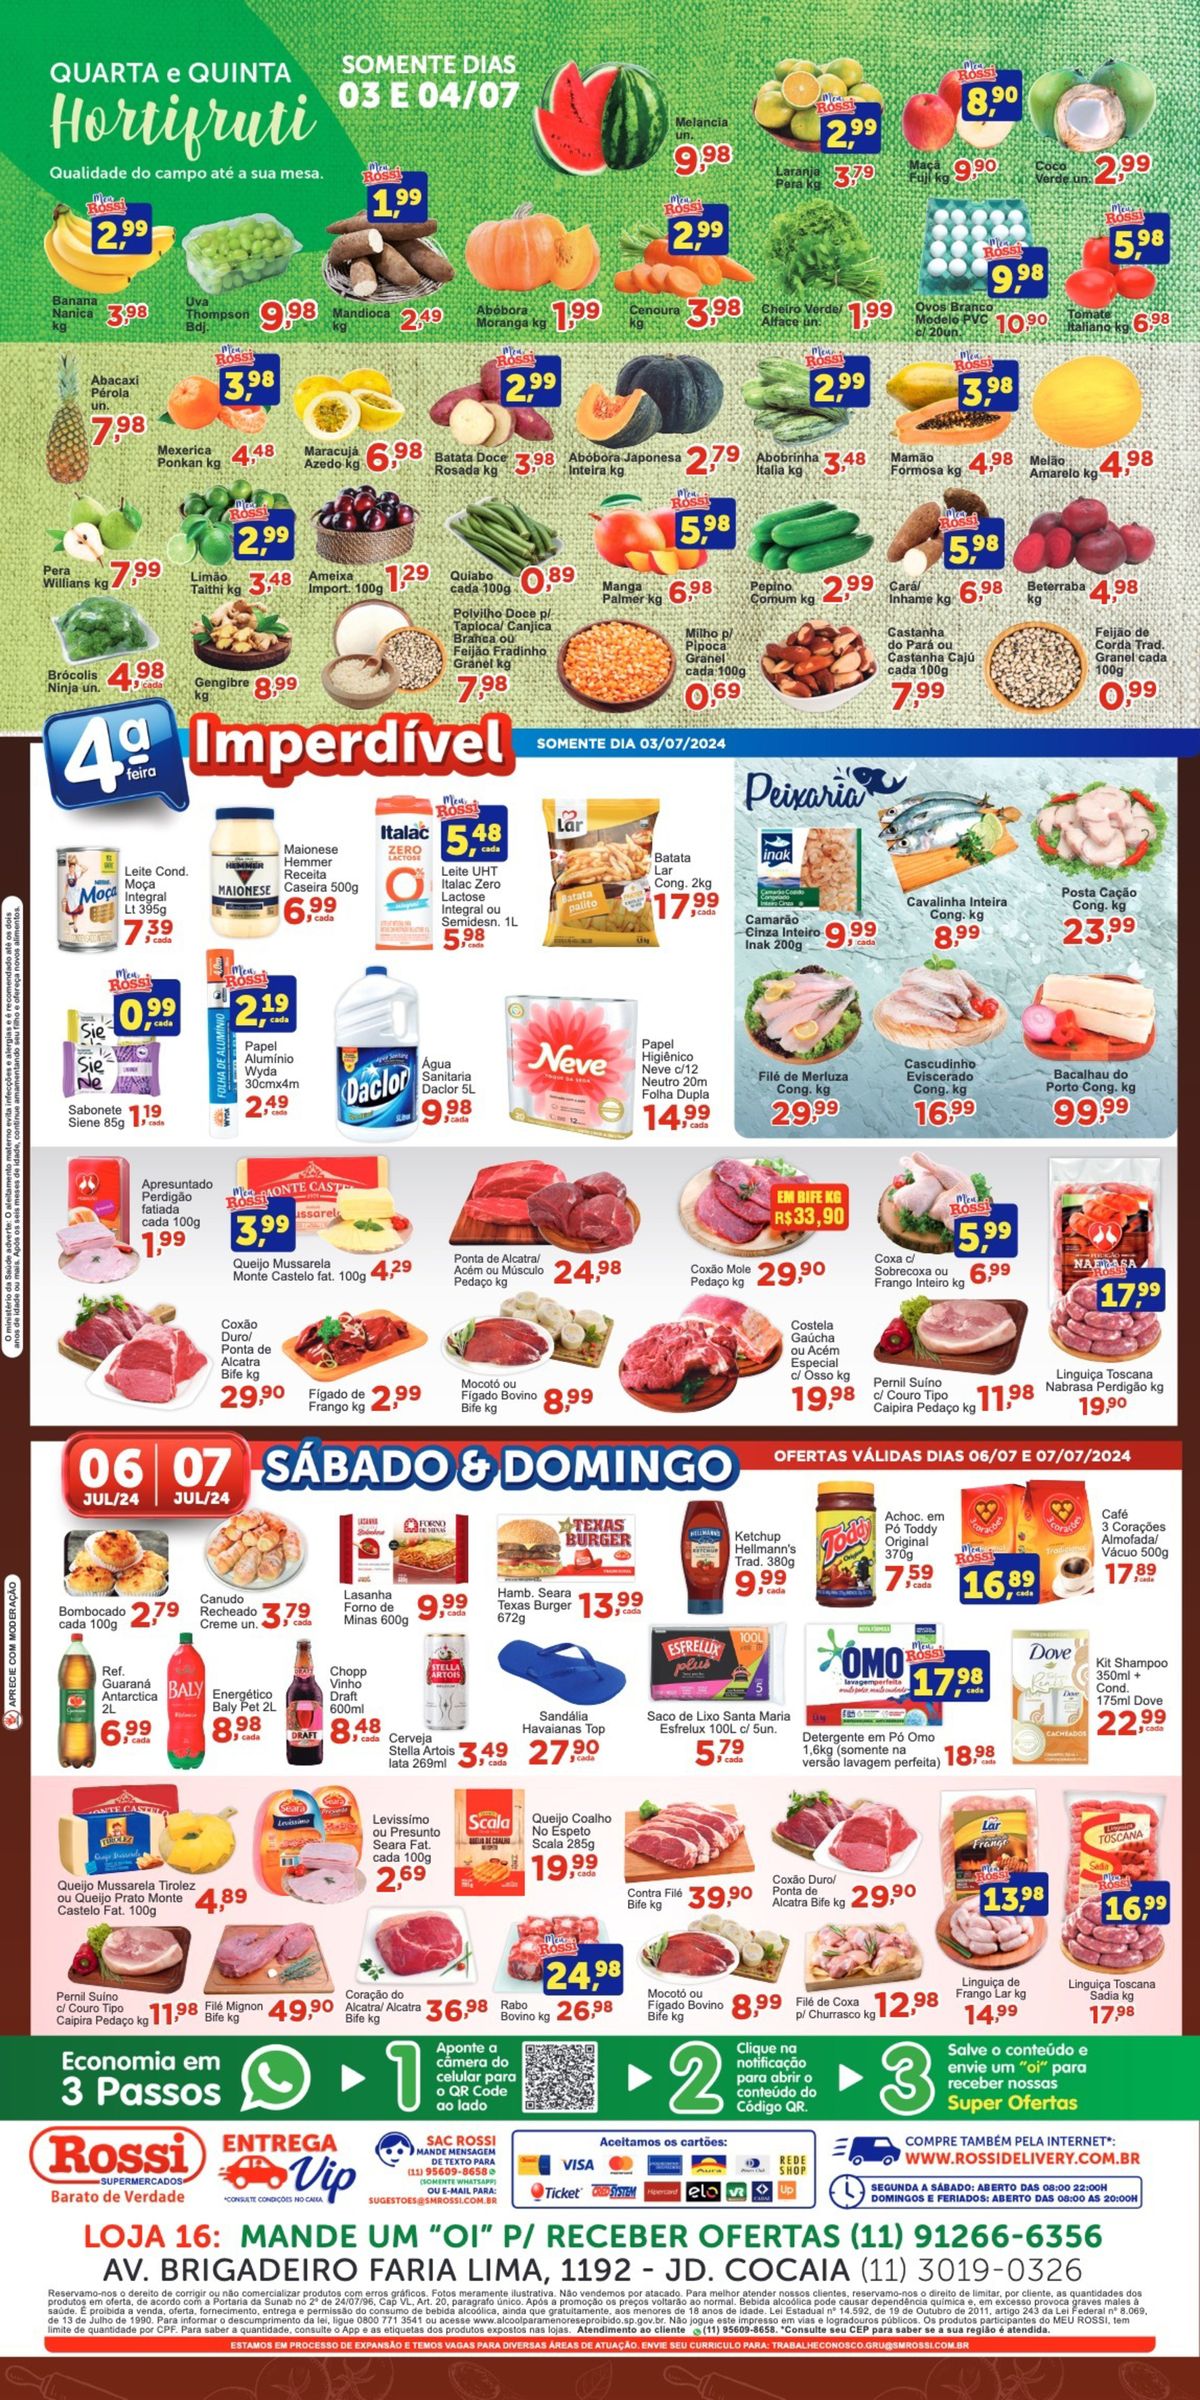 Ofertas em supermercado: Carnes, queijos e produtos de limpeza em promoção